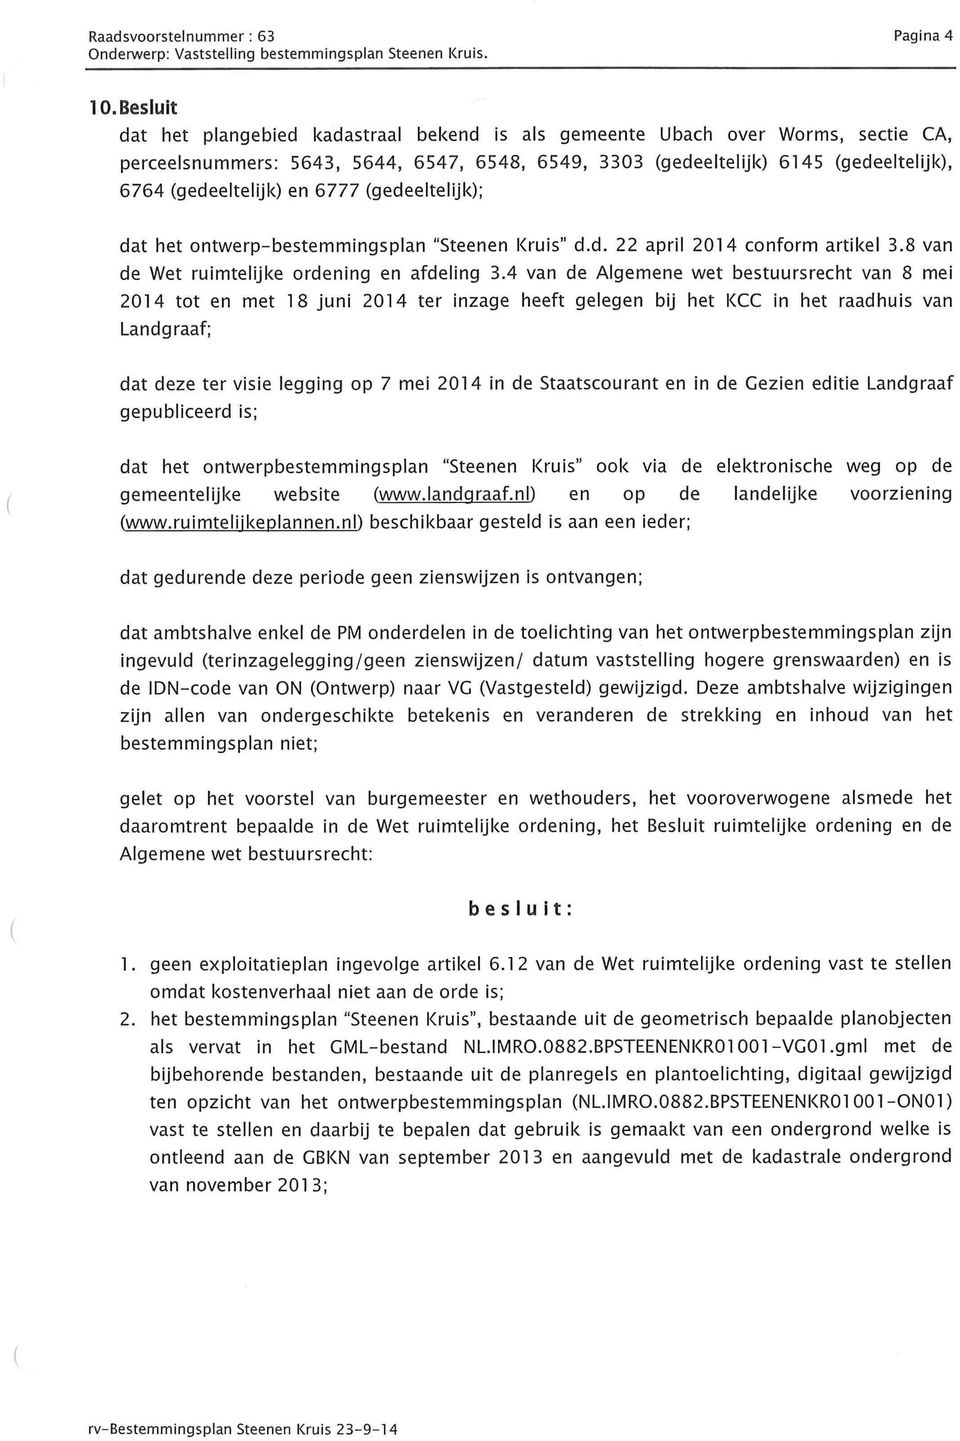 en 6777 (gedeeltelijk); dat het ontwerp-bestemmingsplan "Steenen Kruis" d.d. 22 april 2014 conform artikel 3.8 van de Wet ruimtelijke ordening en afdeling 3.